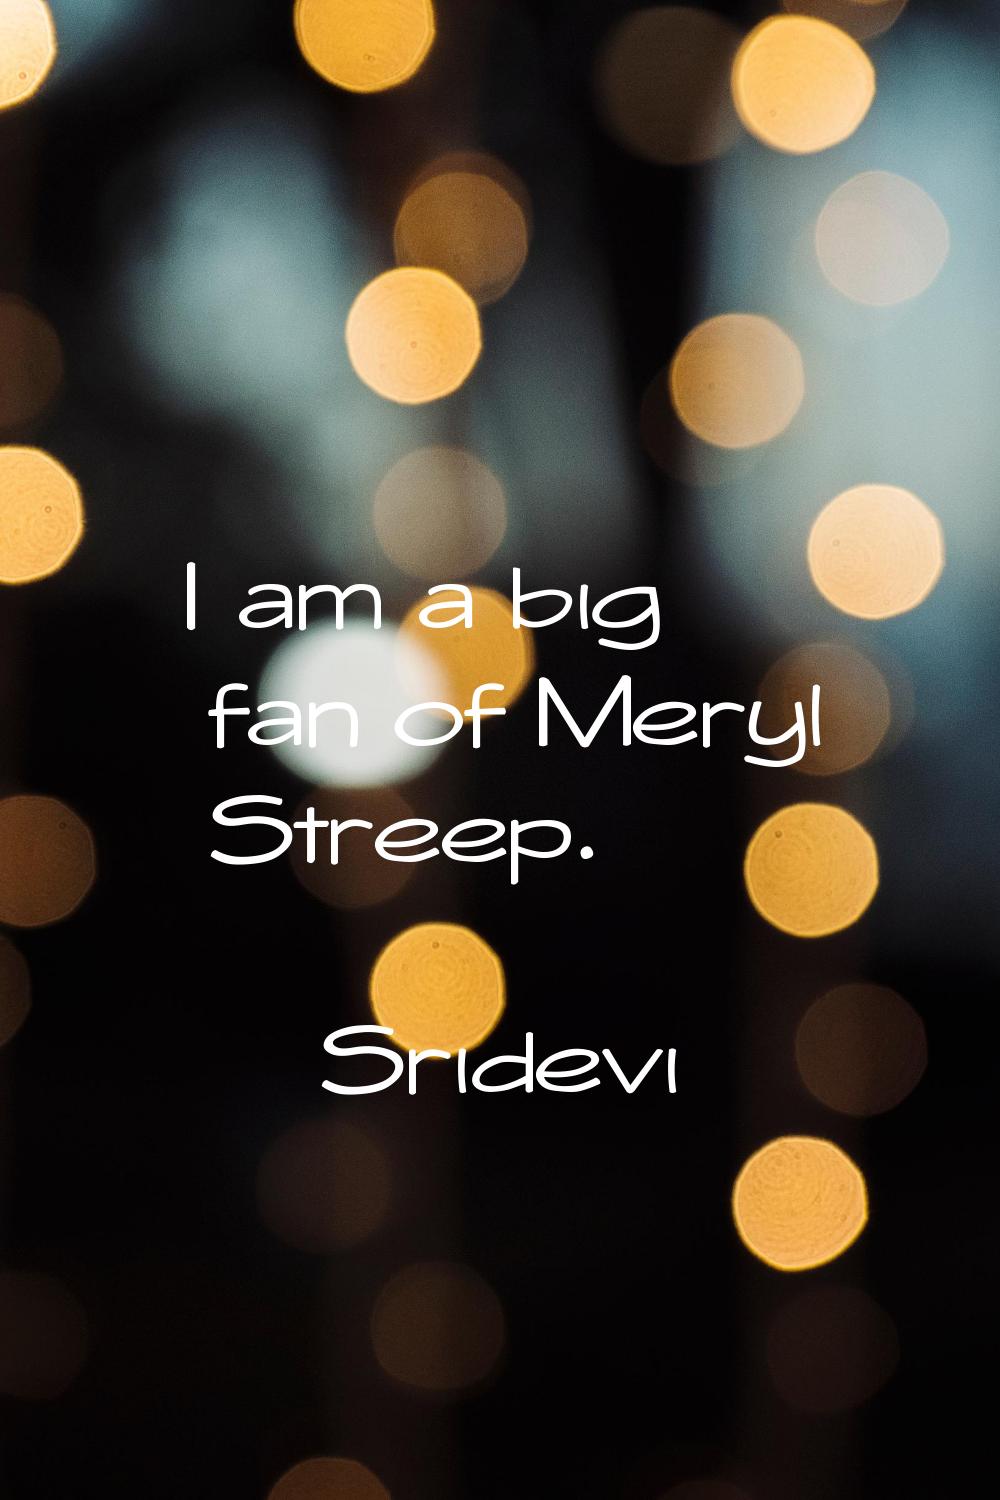 I am a big fan of Meryl Streep.